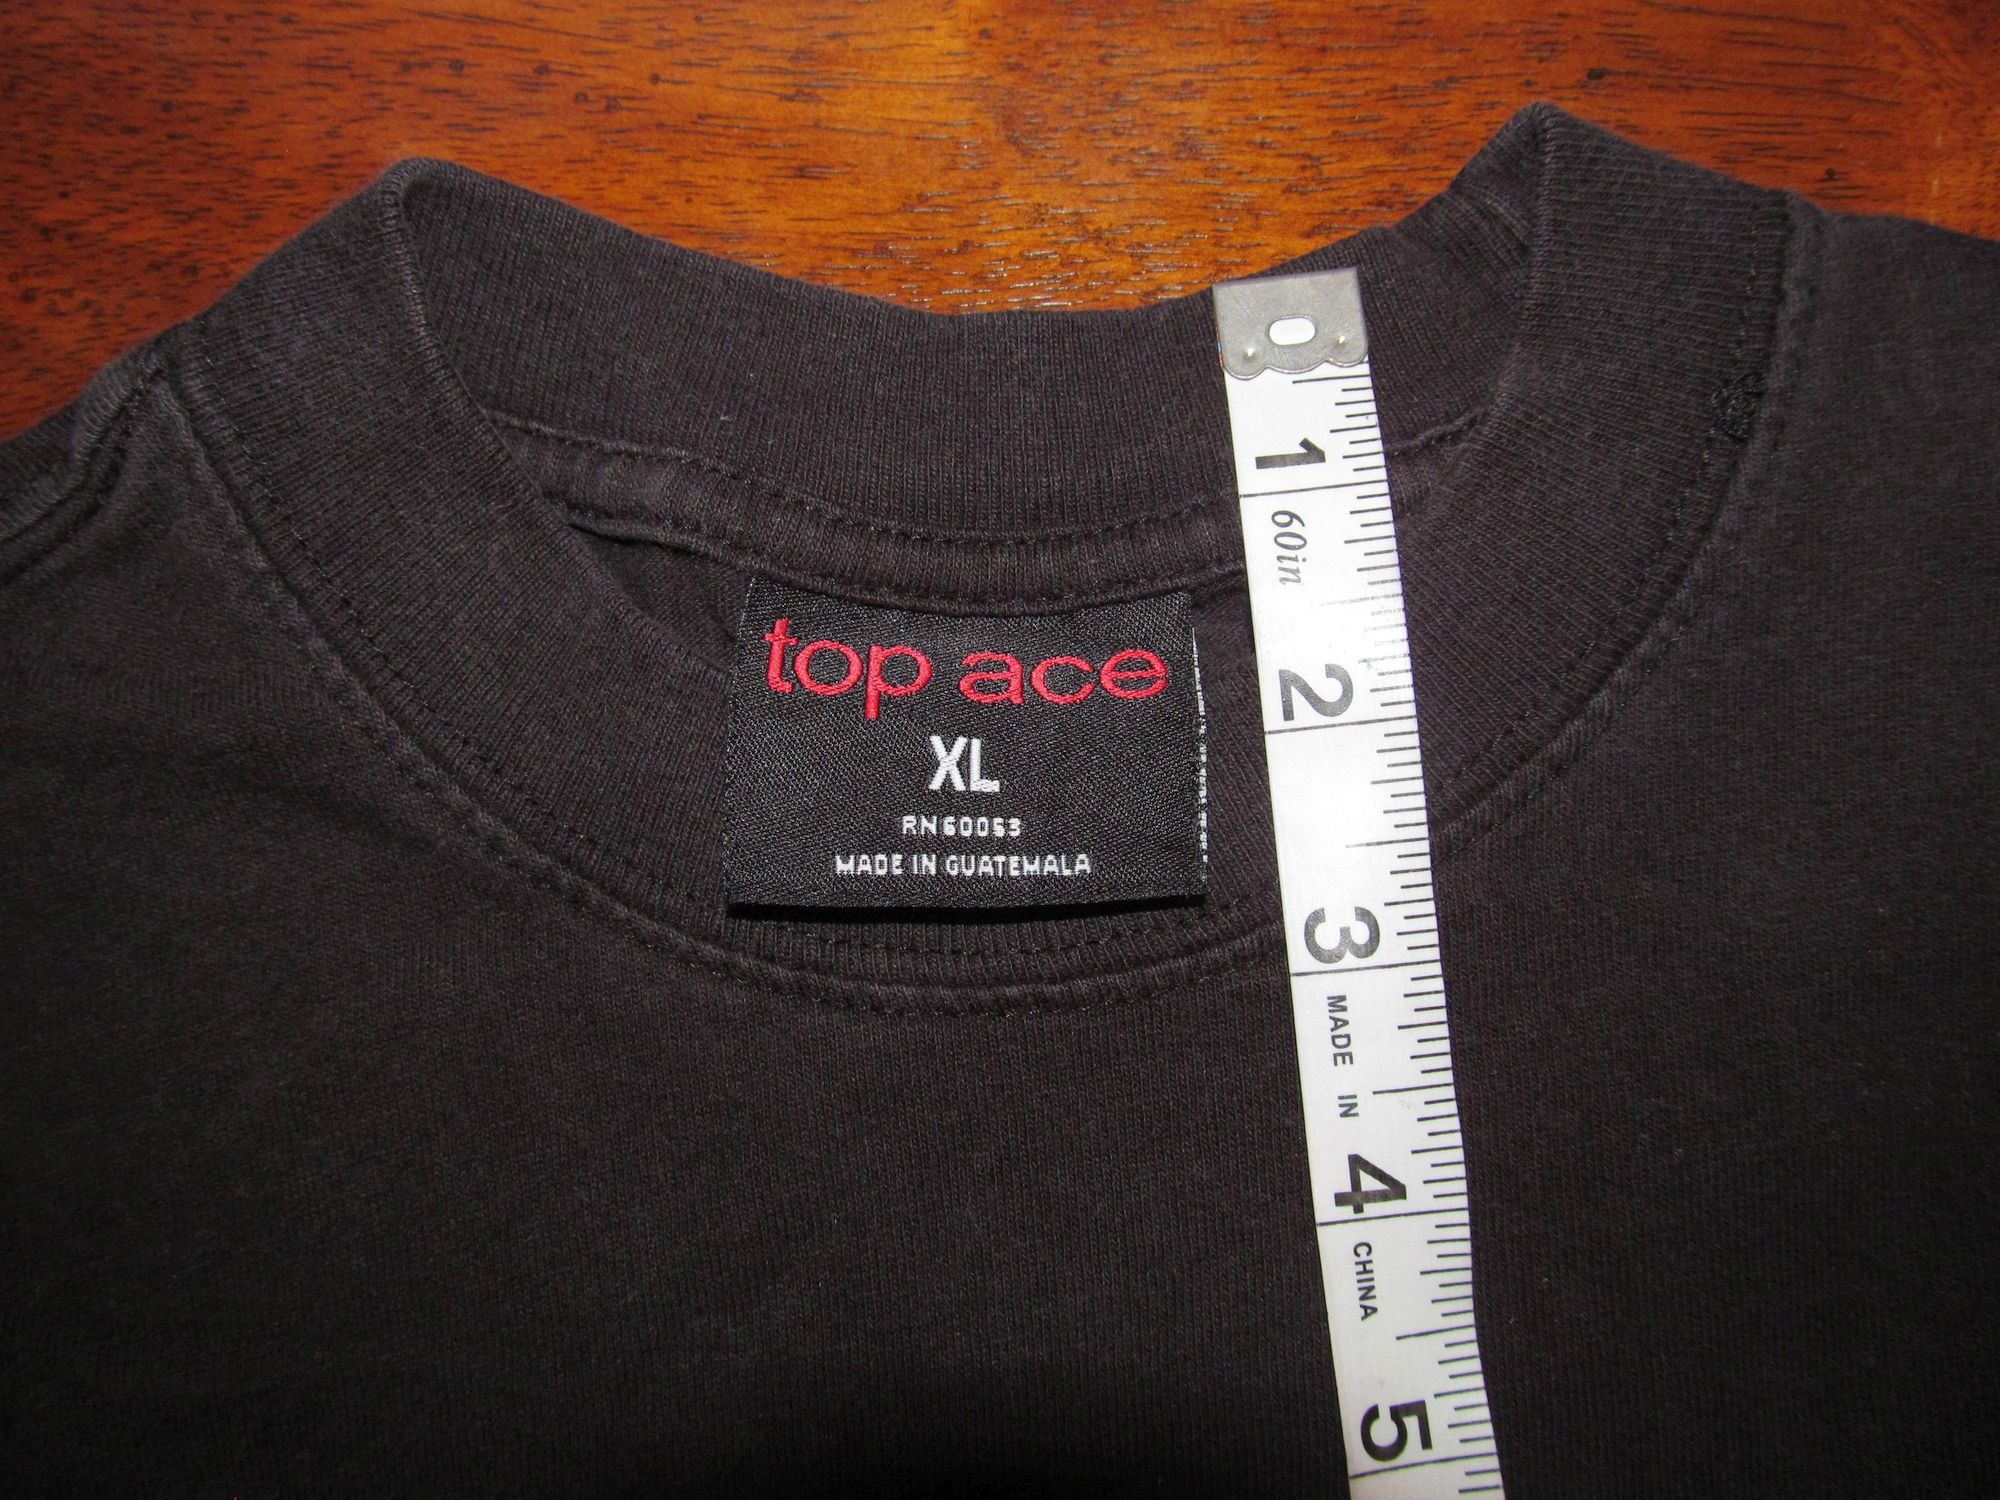 top ace crew neck tee shirt measurements